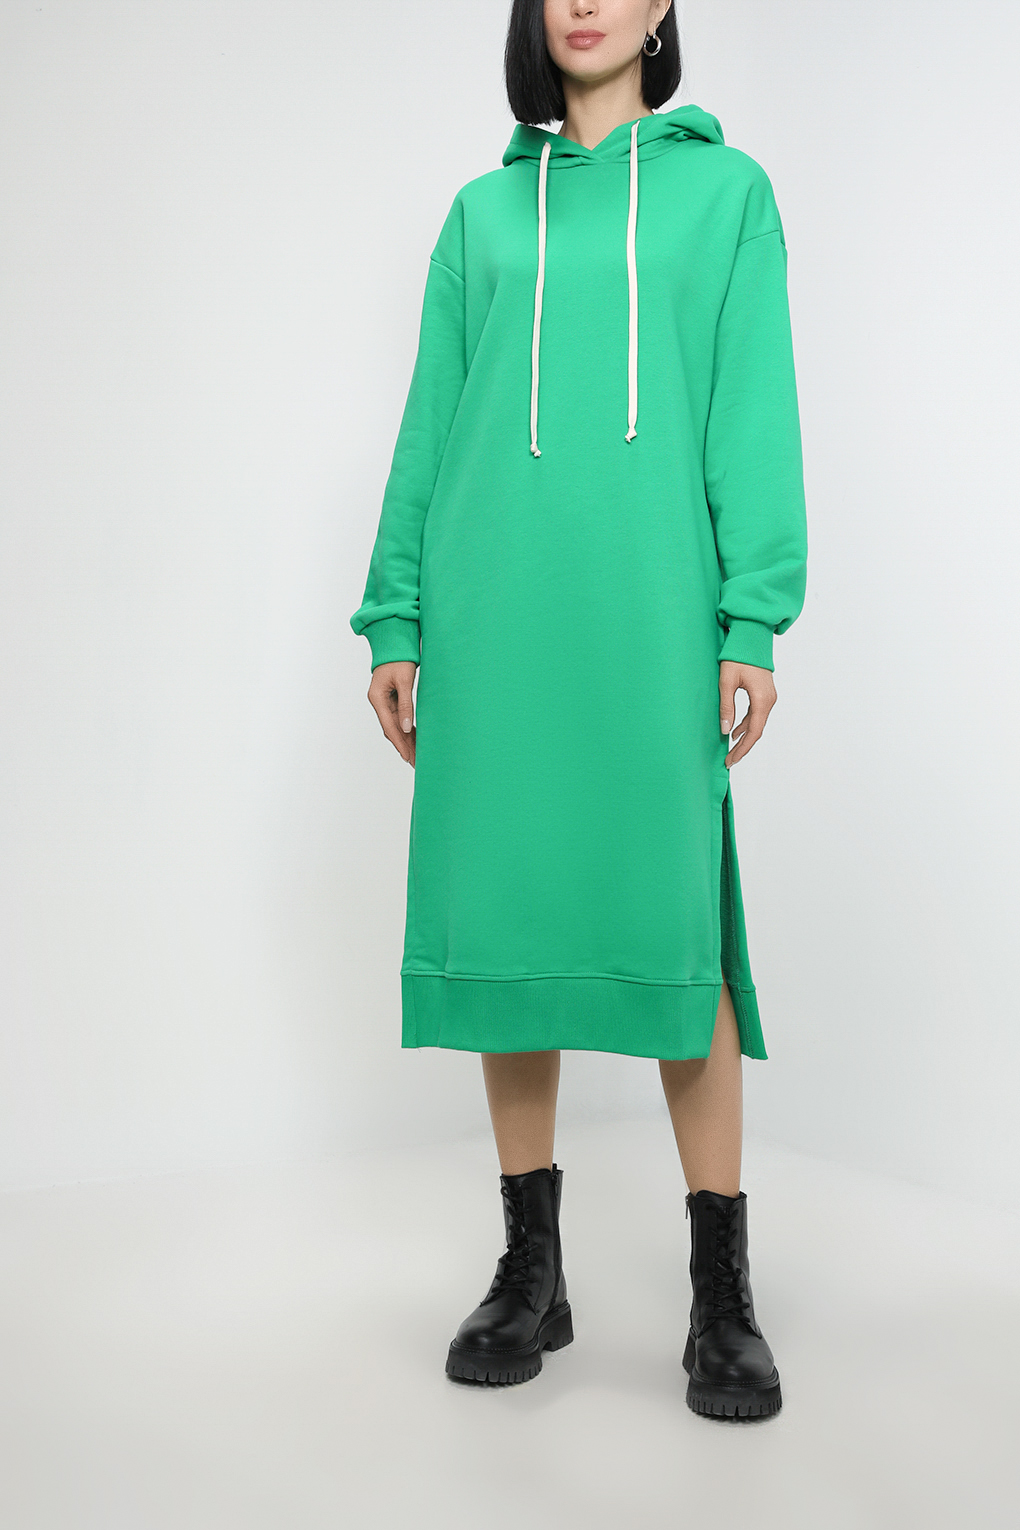 Платье женское Belucci BL23015311-004 зеленое S